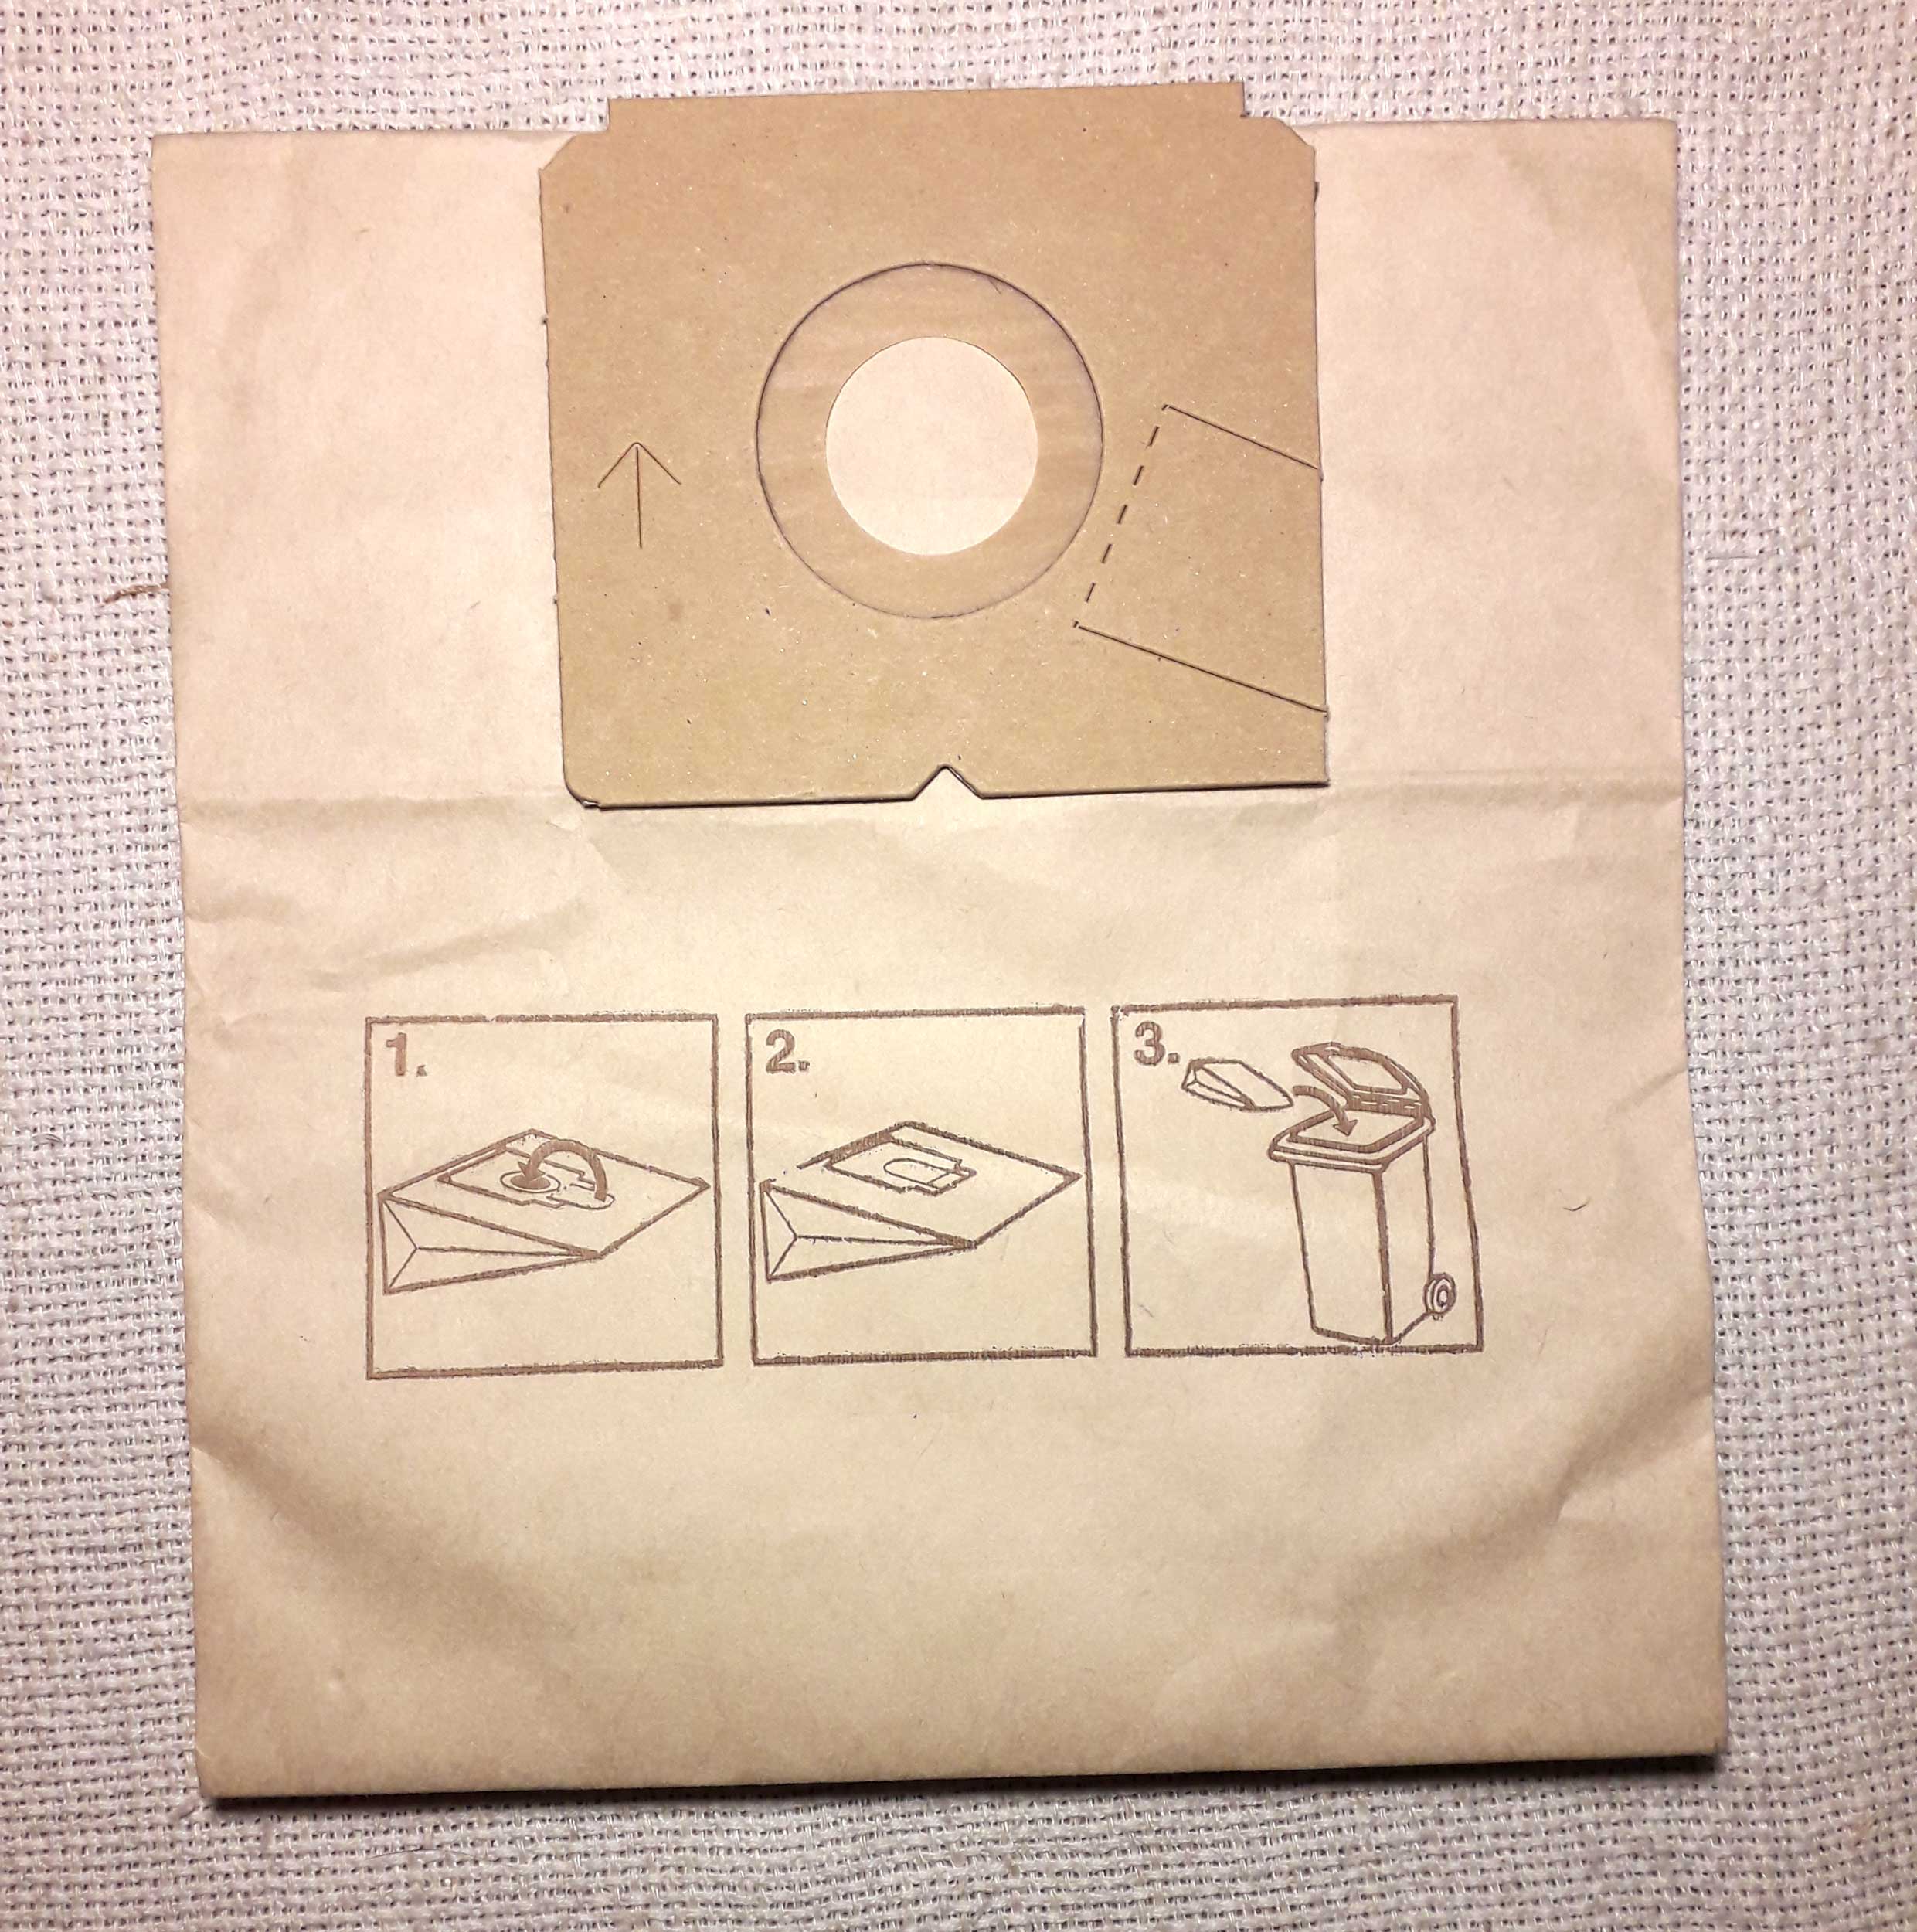 Мешок для пылесоса своими руками: как сделать многоразовый, из чего сшить, материал